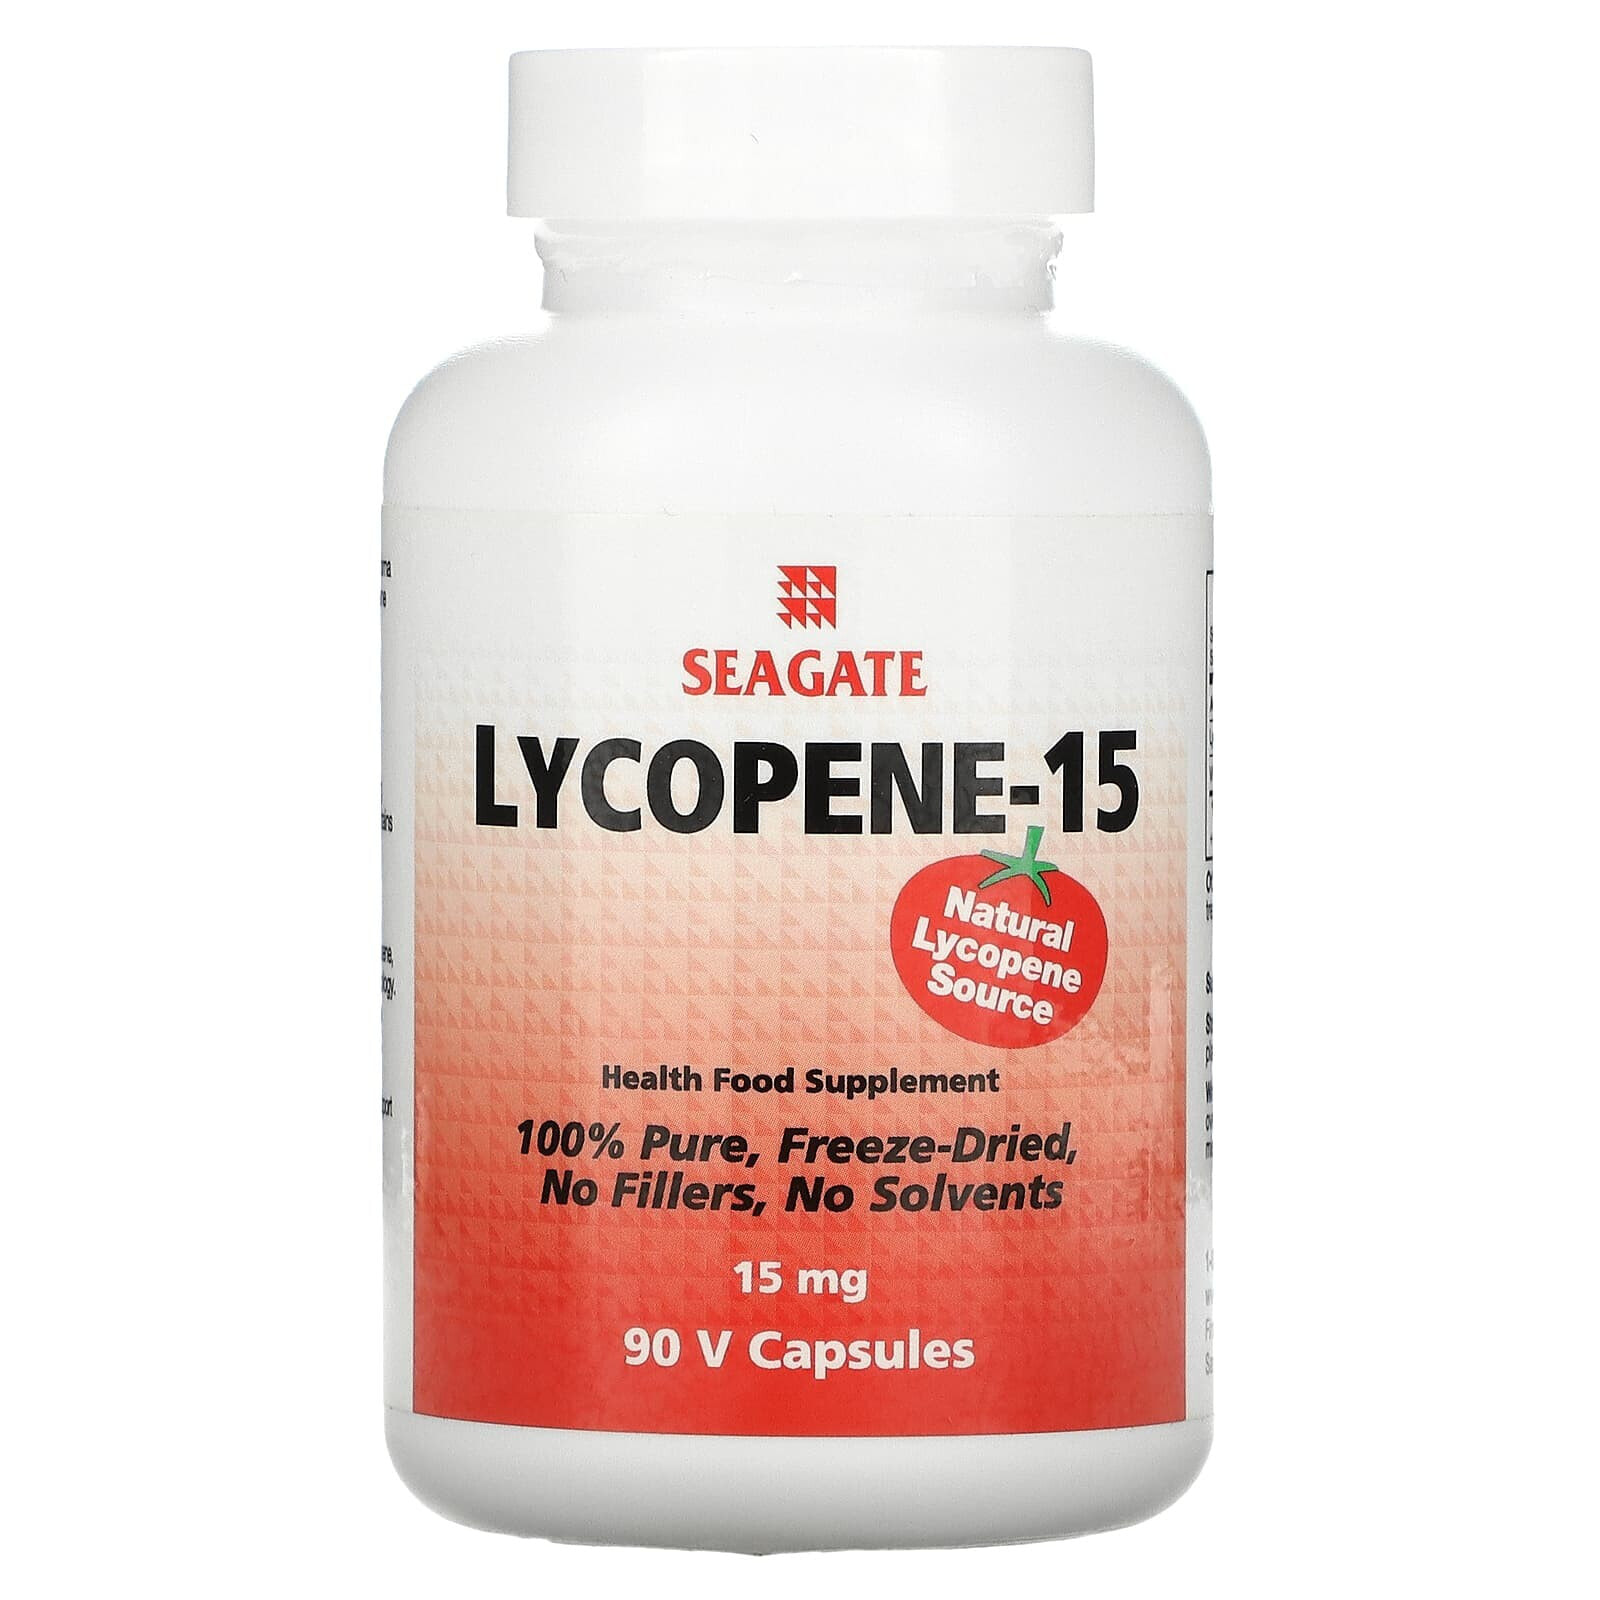 Lycopene-15, 15 mg, 90 V Capsules